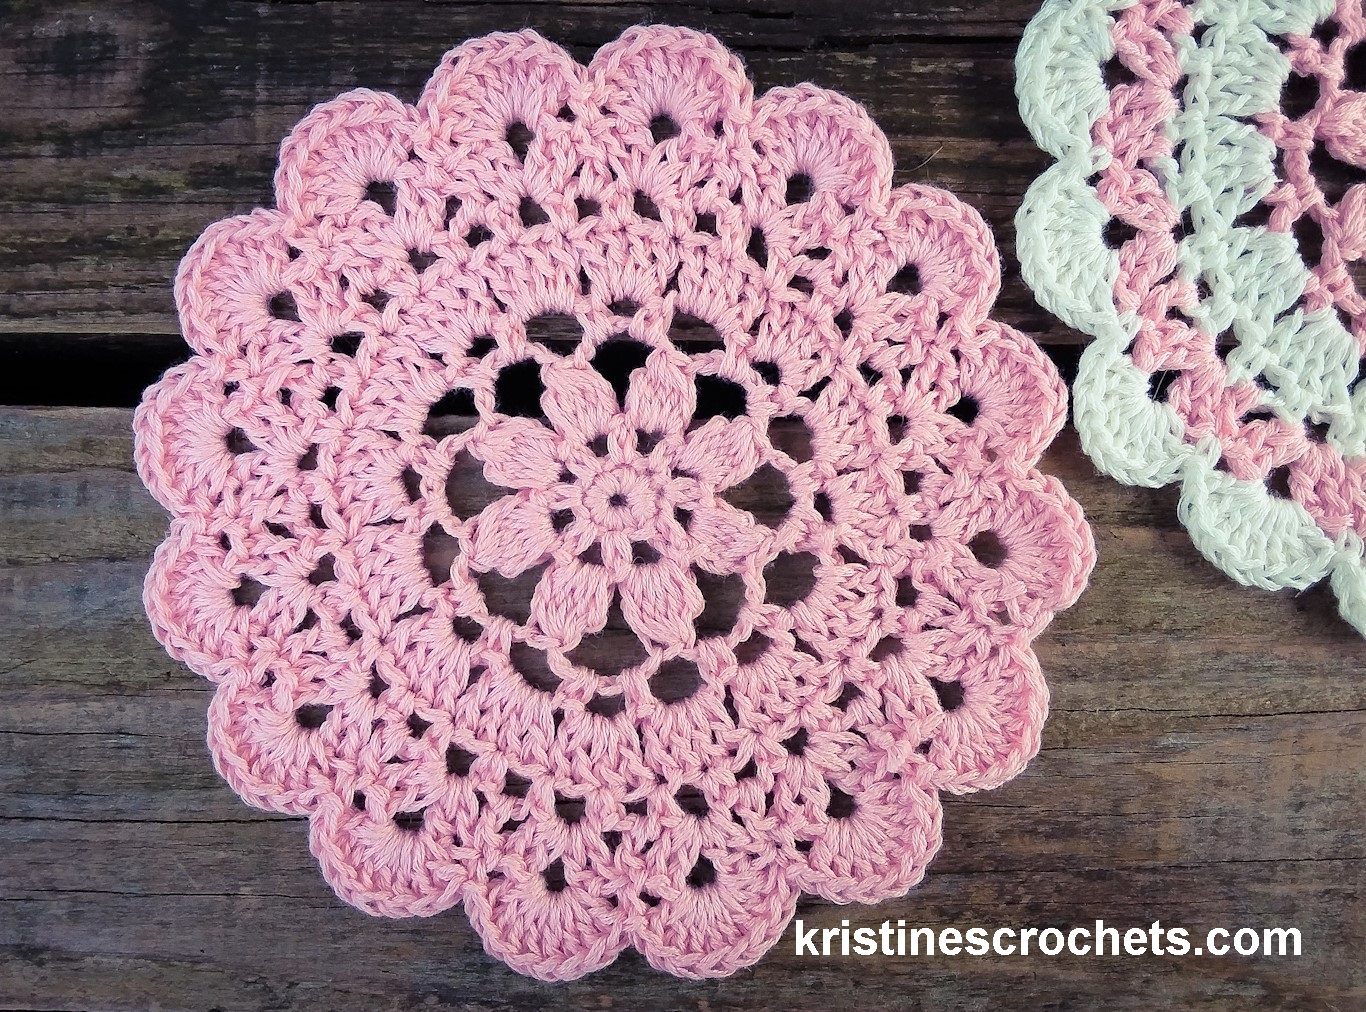 Crochet cherry pattern easy: Crochet pattern